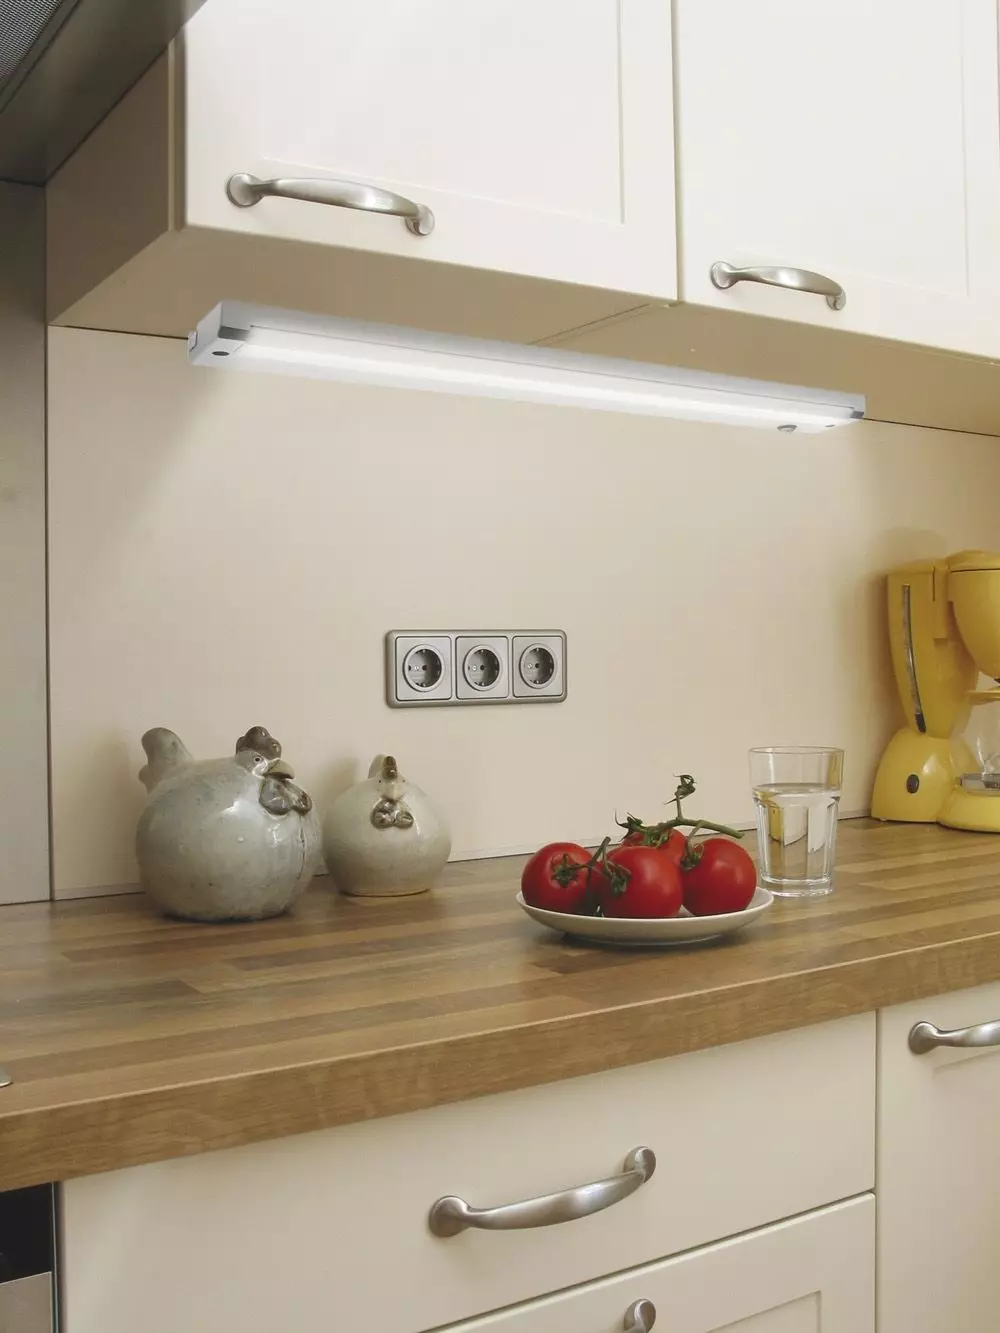 Podświetlenie LED pod szafkami kuchennymi (80 zdjęć): Przegląd nad głową, dołączonych i innych lamp kuchennych z diodami LED. Jakie lampy lepiej wybierają? 21002_36